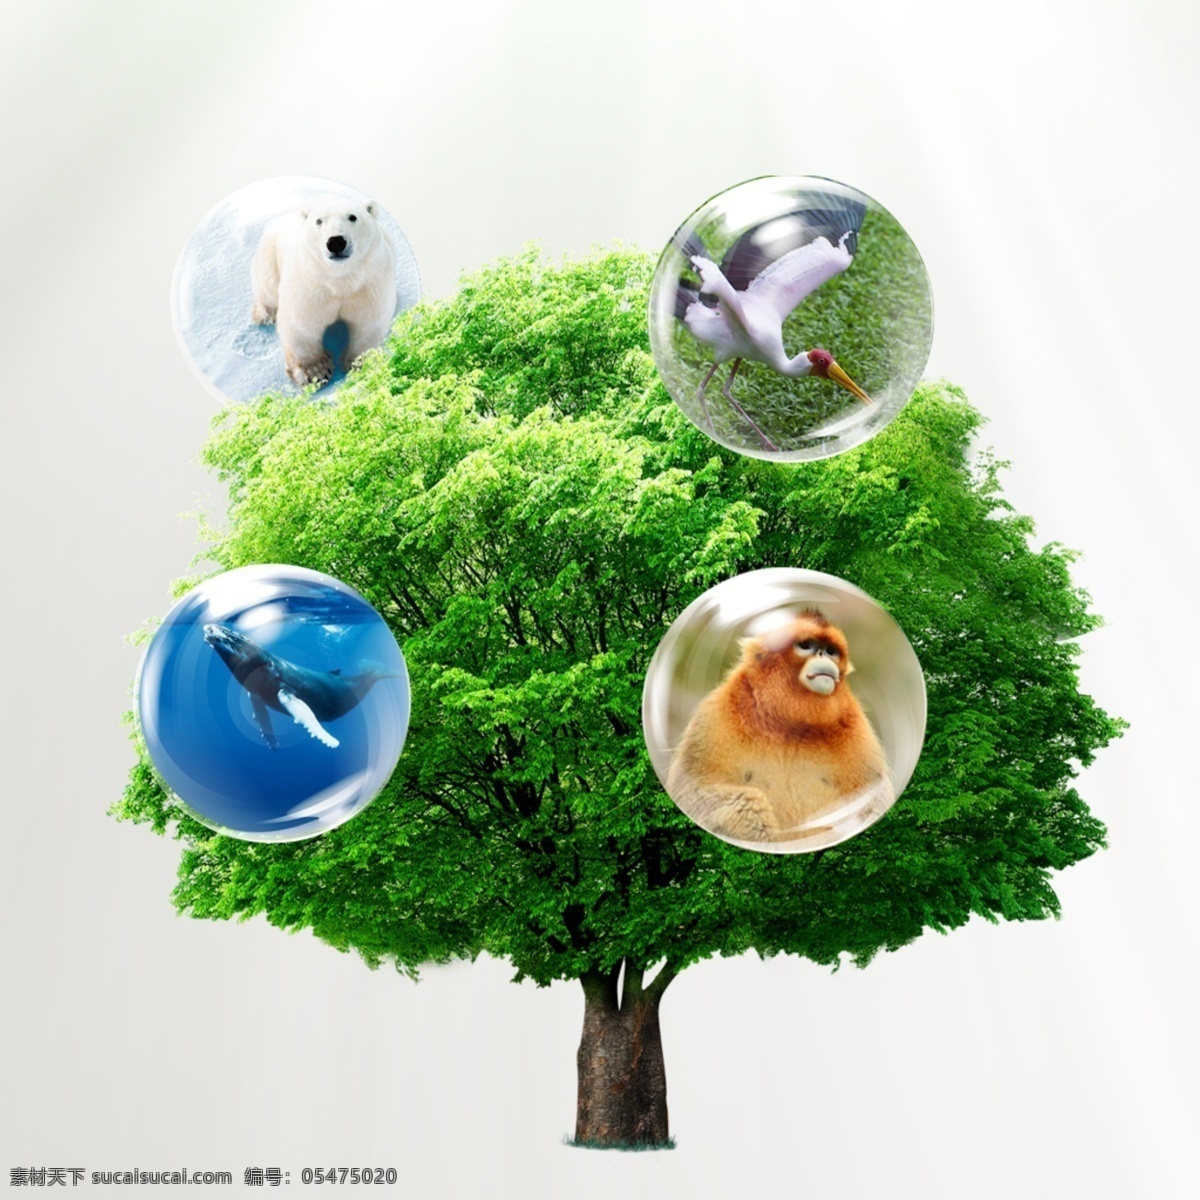 保护动植物 动物 植物 森林 环保